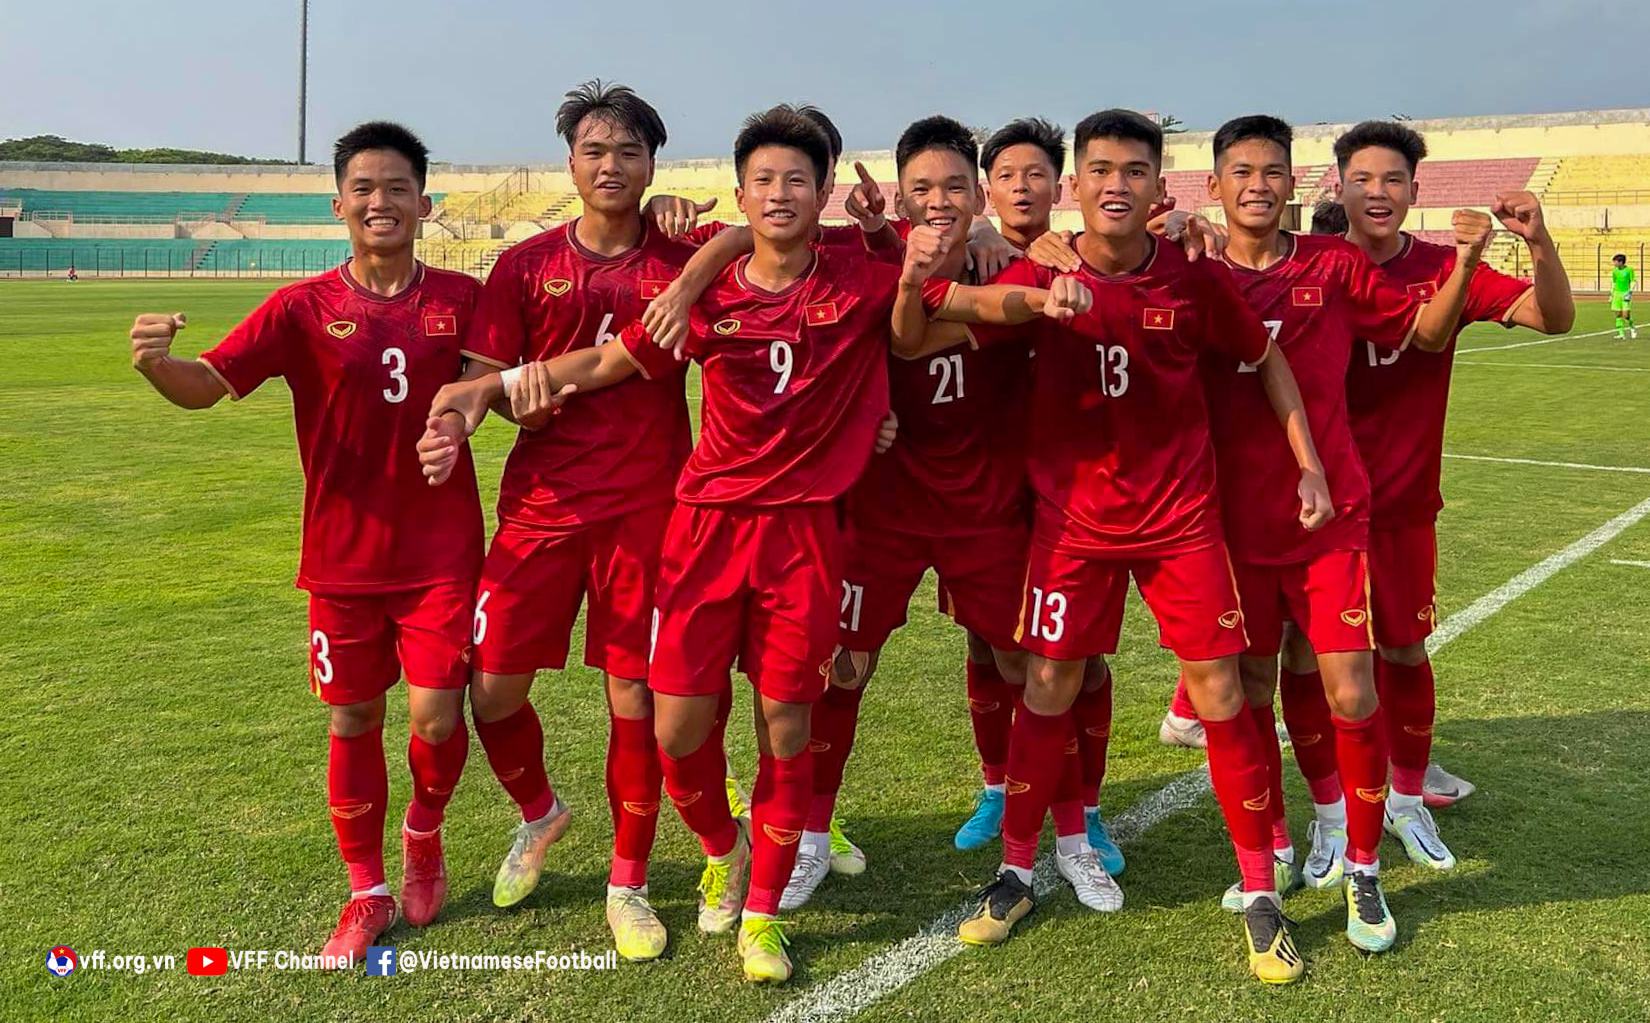 HLV Singapore bày tỏ sự khâm phục trước lối chơi của U16 Việt Nam